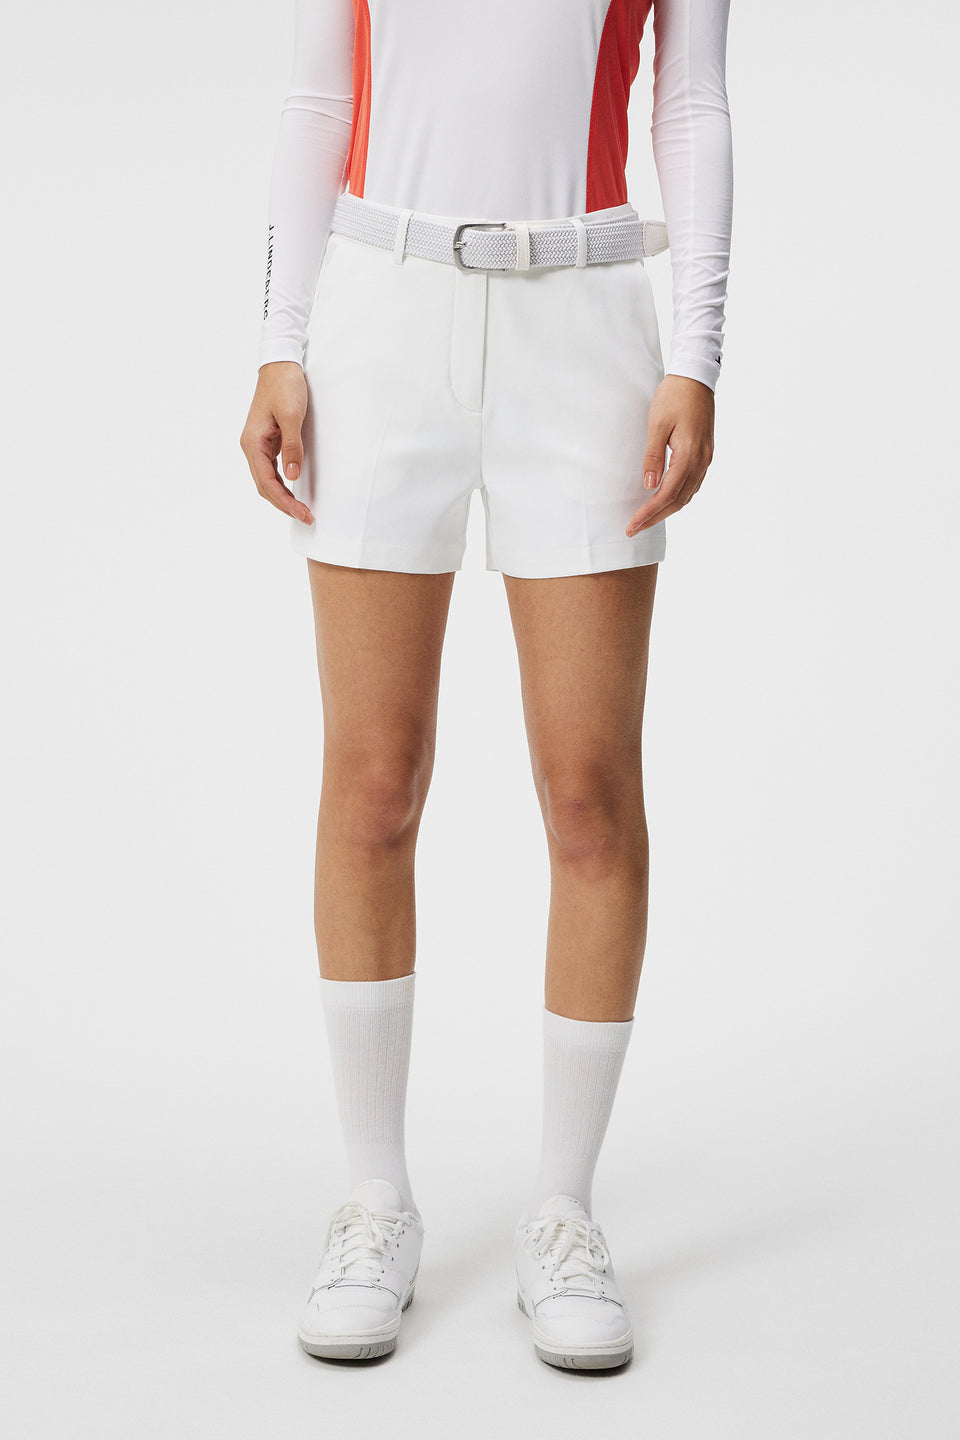 Stylish Golf Shorts for Women - J.Lindeberg